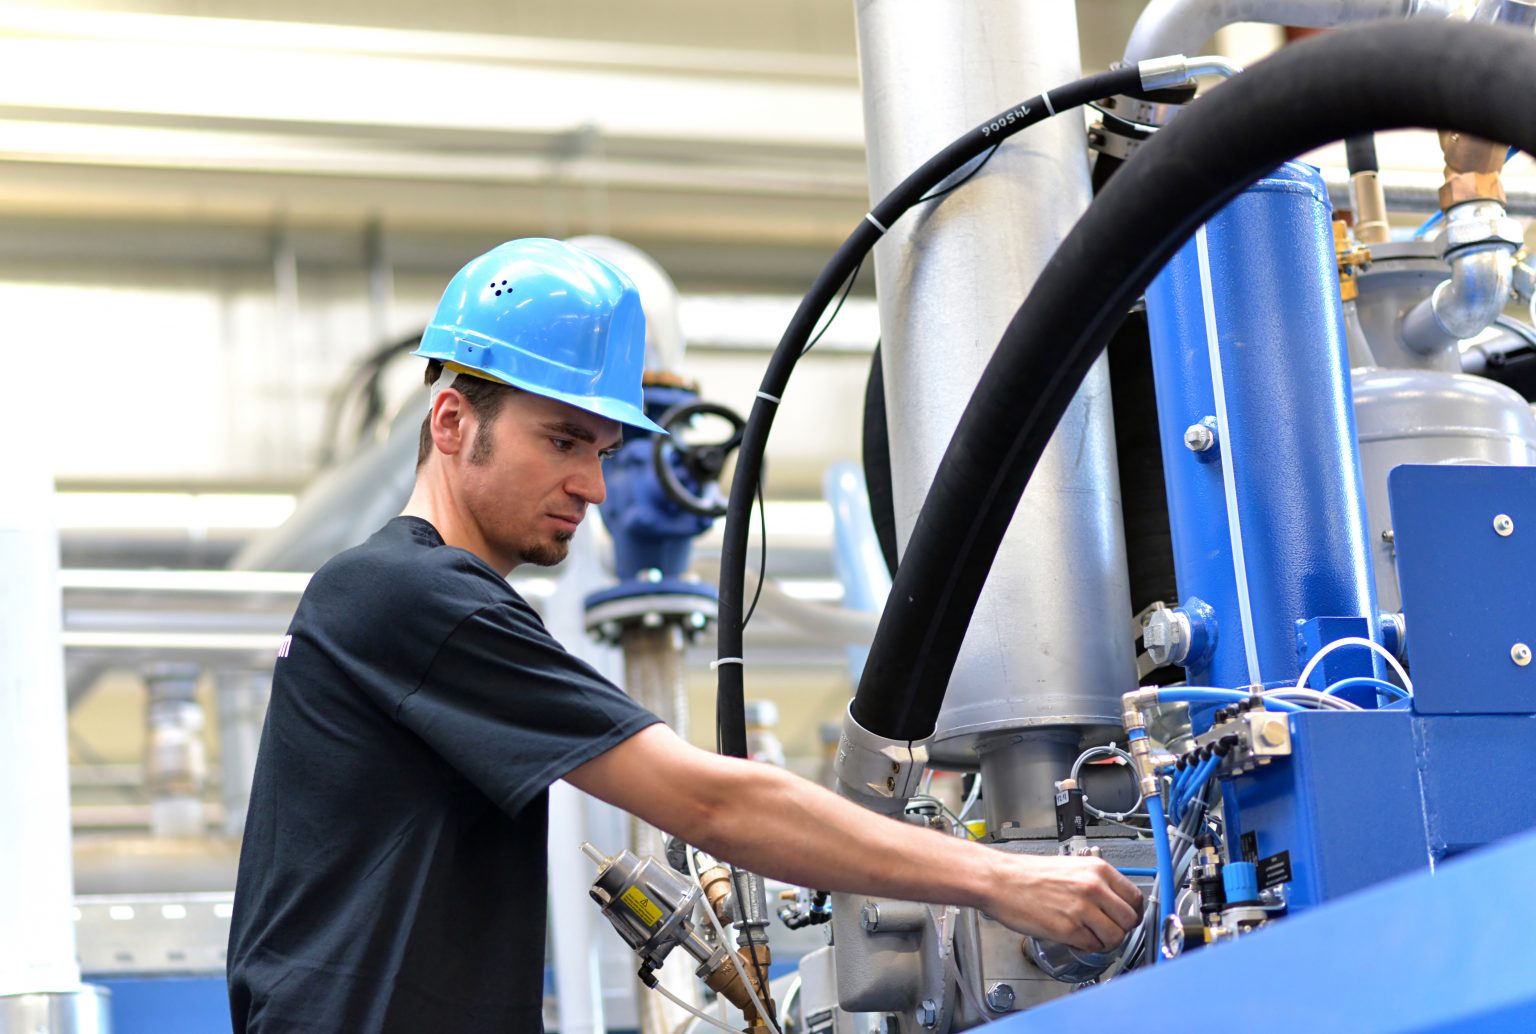 Katzinger Servicetechniker mit Helm nimmt Industrianlage mit großen Hydraulikschläuchen in Betrieb.